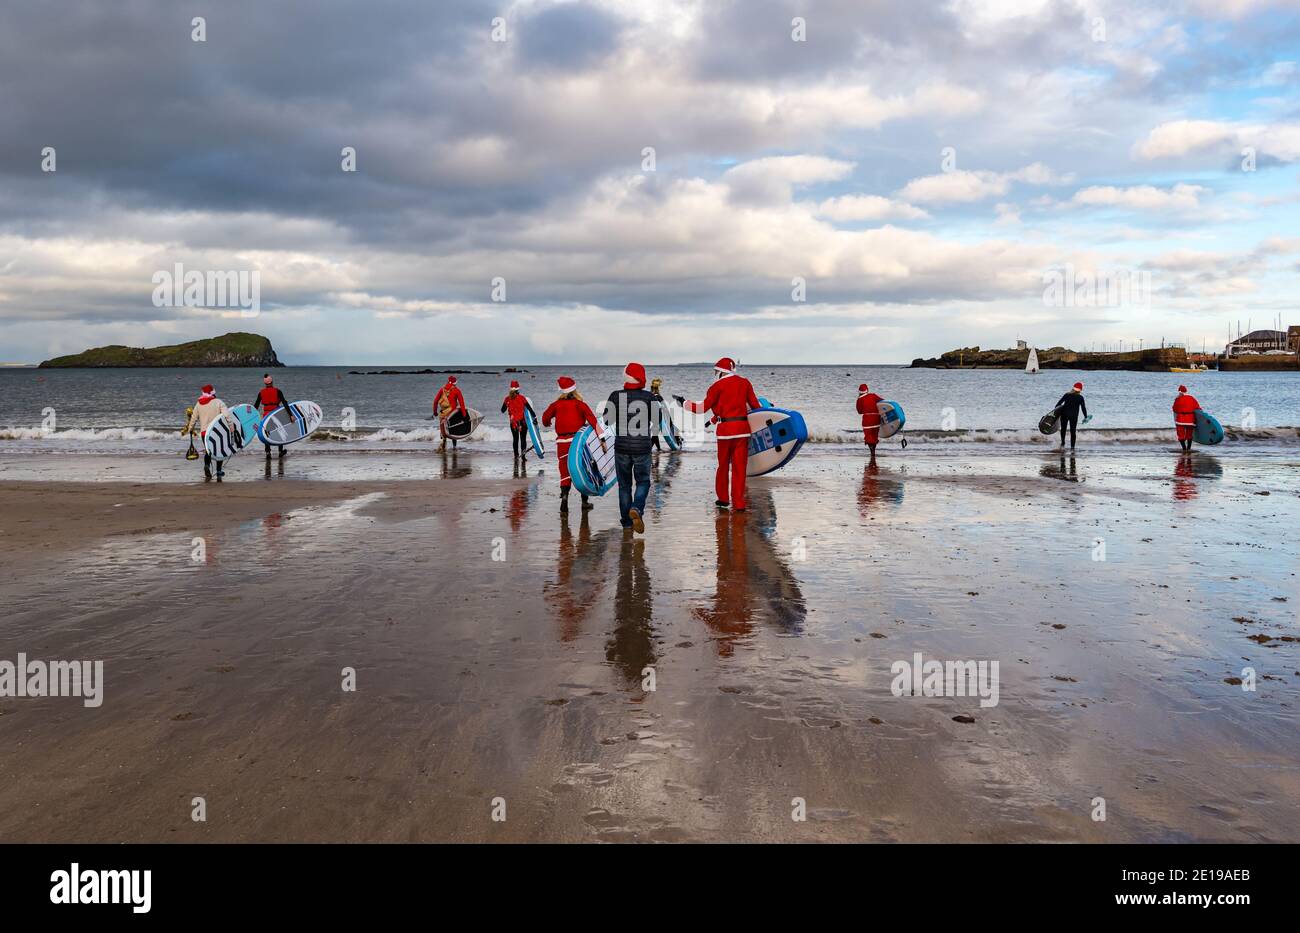 Evento benefico della comunità: Paddle boarders in costumi di Santa, North Berwick, East Lothian, Scozia, Regno Unito Foto Stock